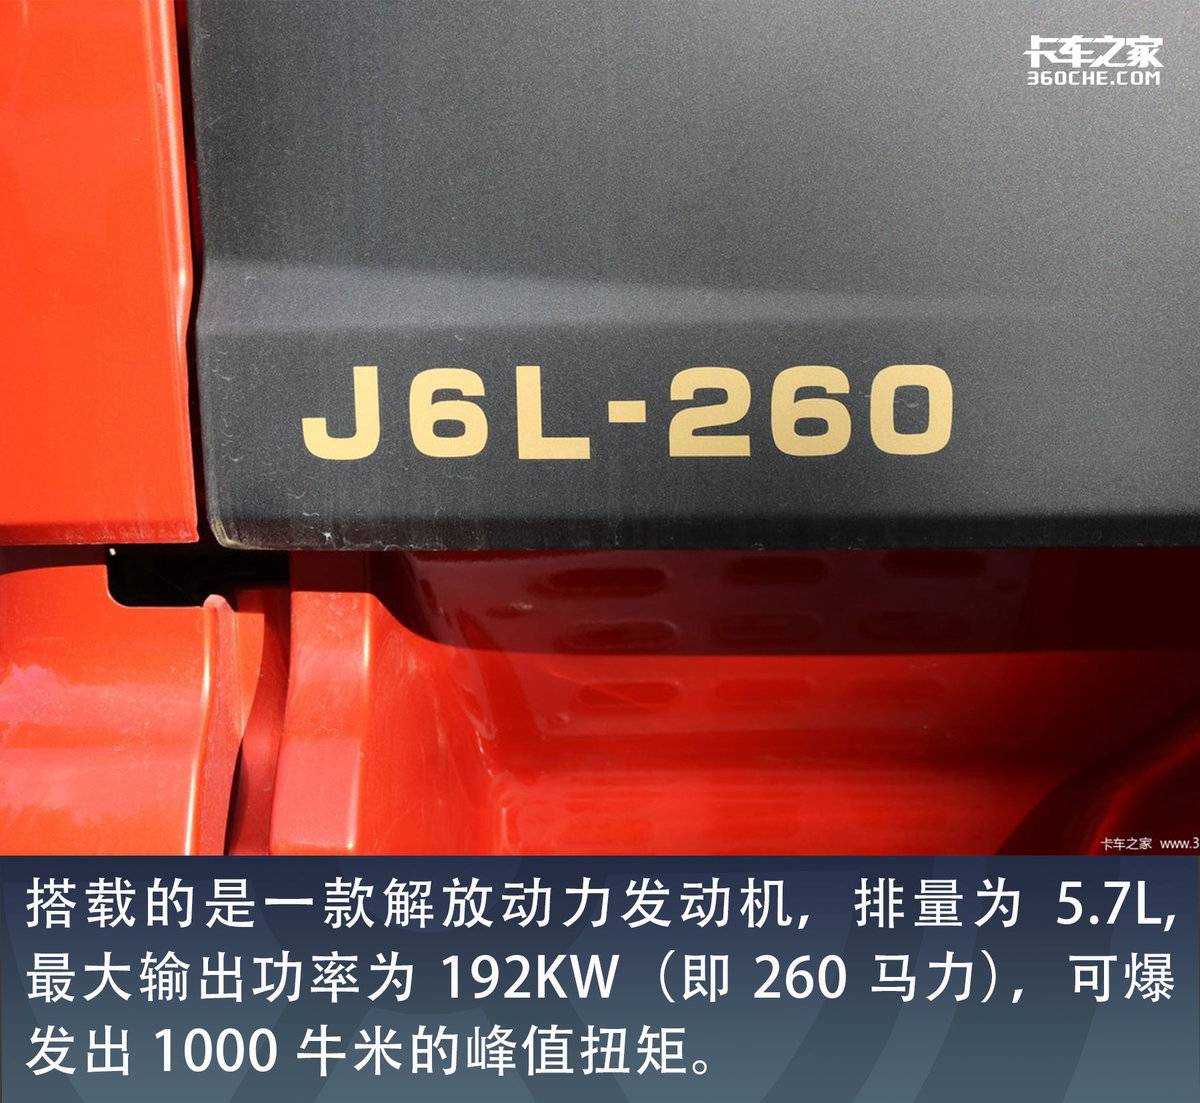 神车升舱下卧铺宽达1.2米 用这款J6L跑绿通舒适更高效